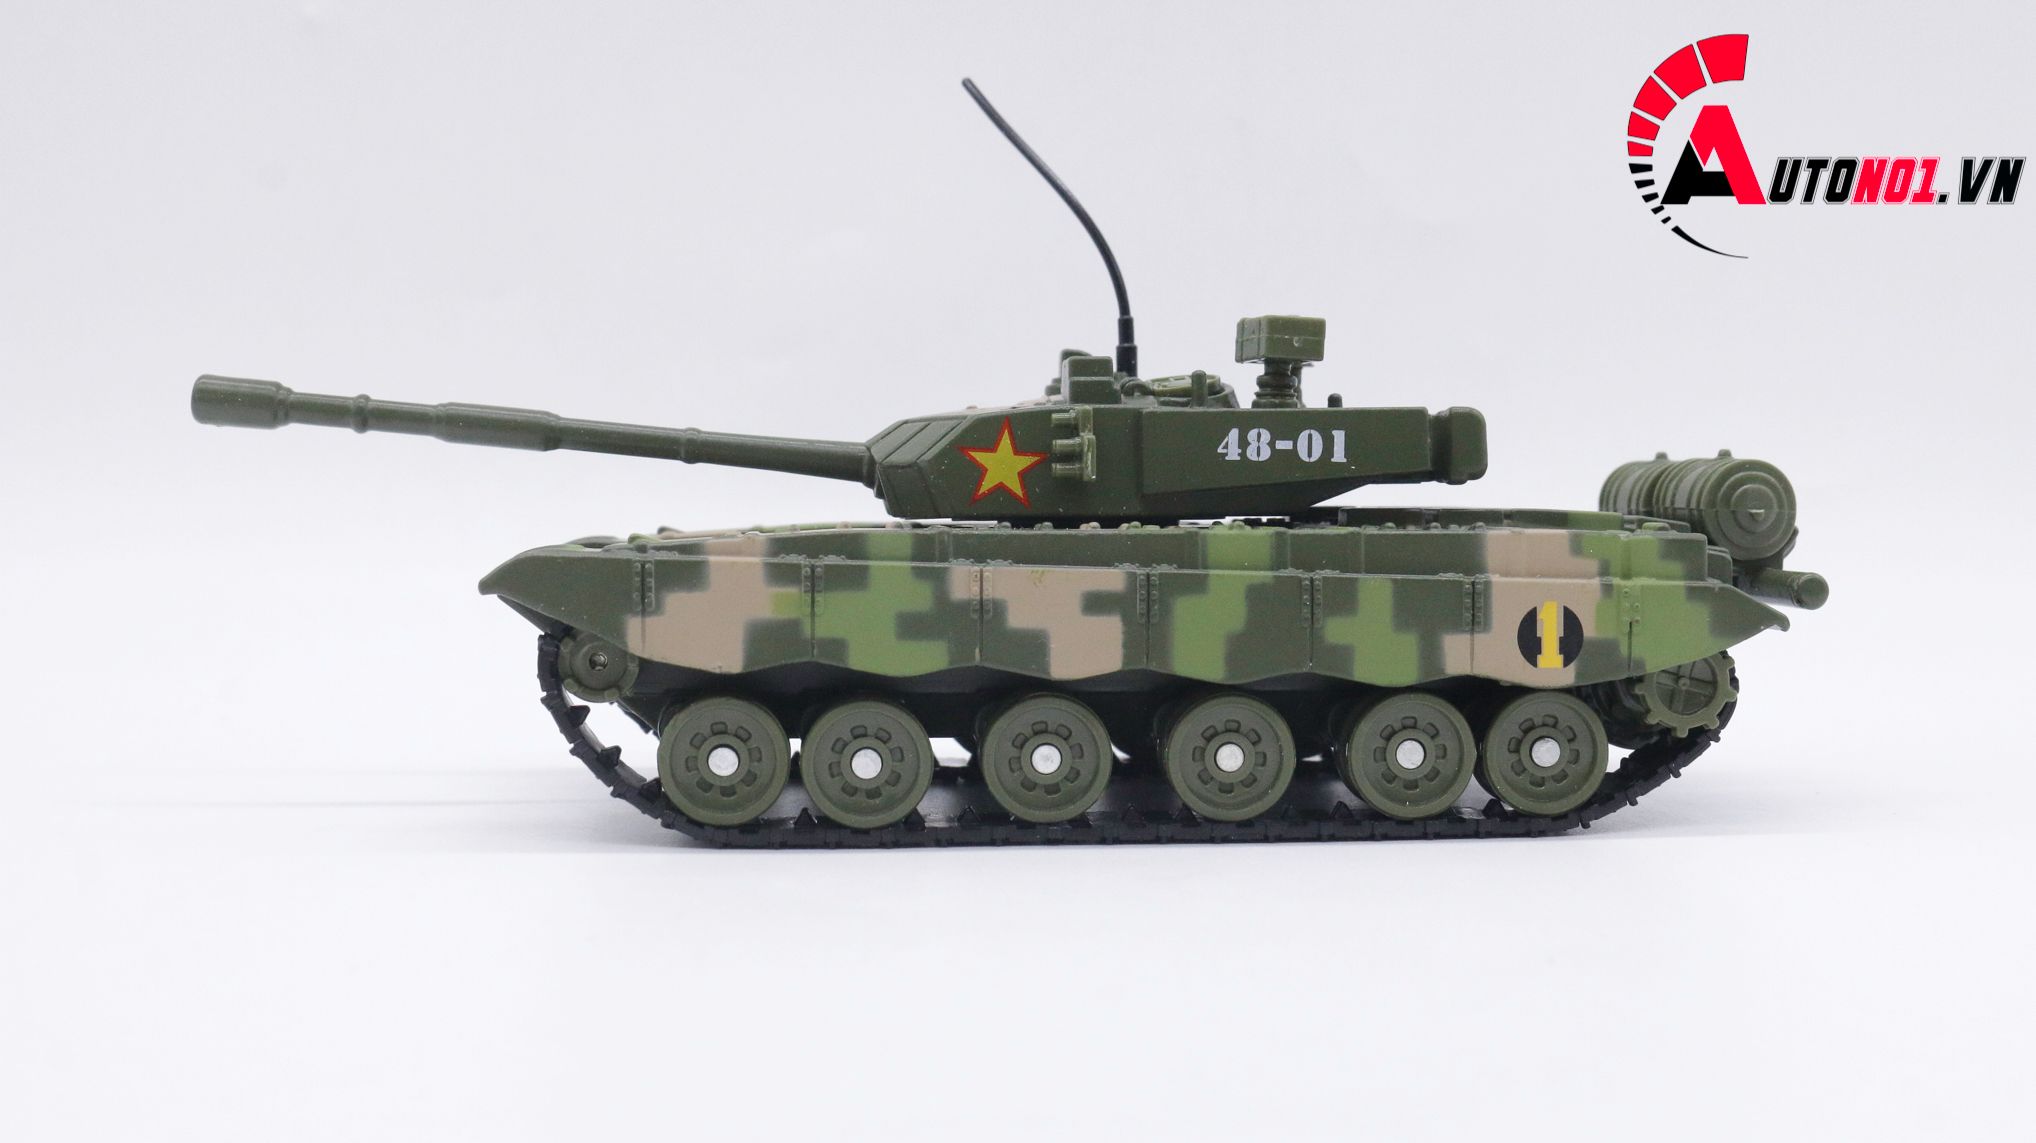  Mô hình xe tăng quân sự j48-01 green 1:32 alloy OT077 